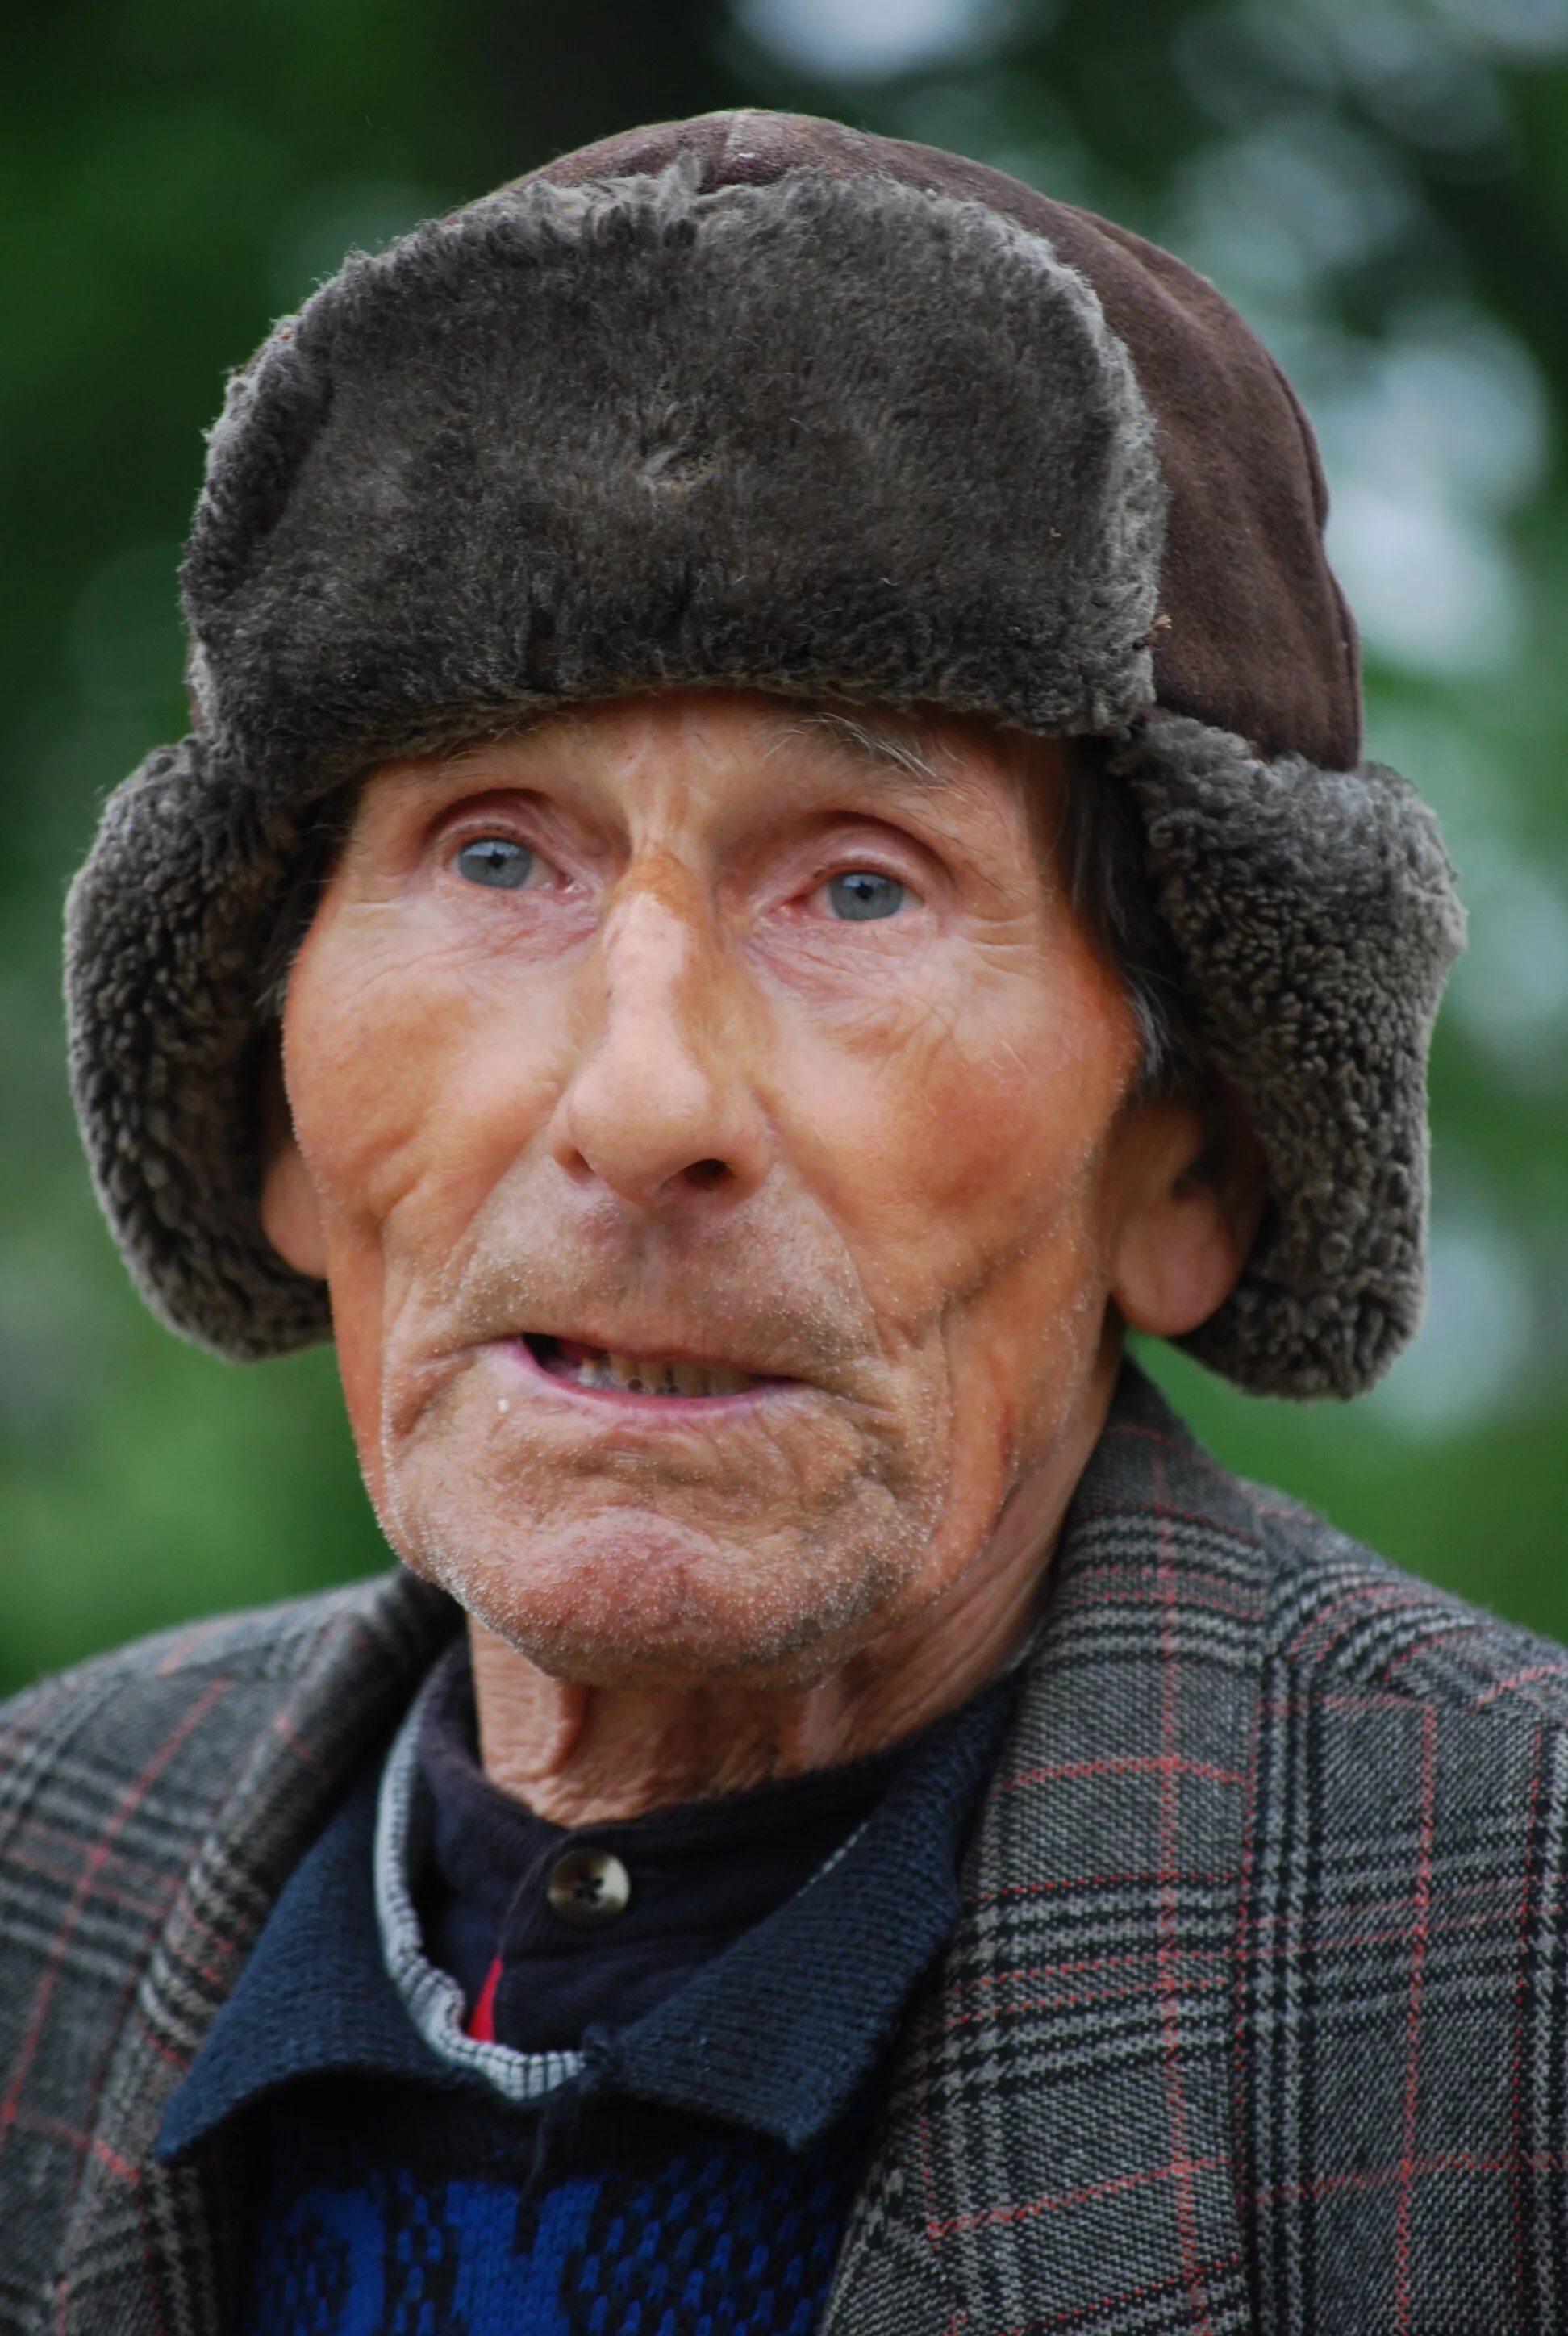 75 лет возраст мужчины. Старик. Старый человек. Фотографии людей. Портрет пожилого мужчины.